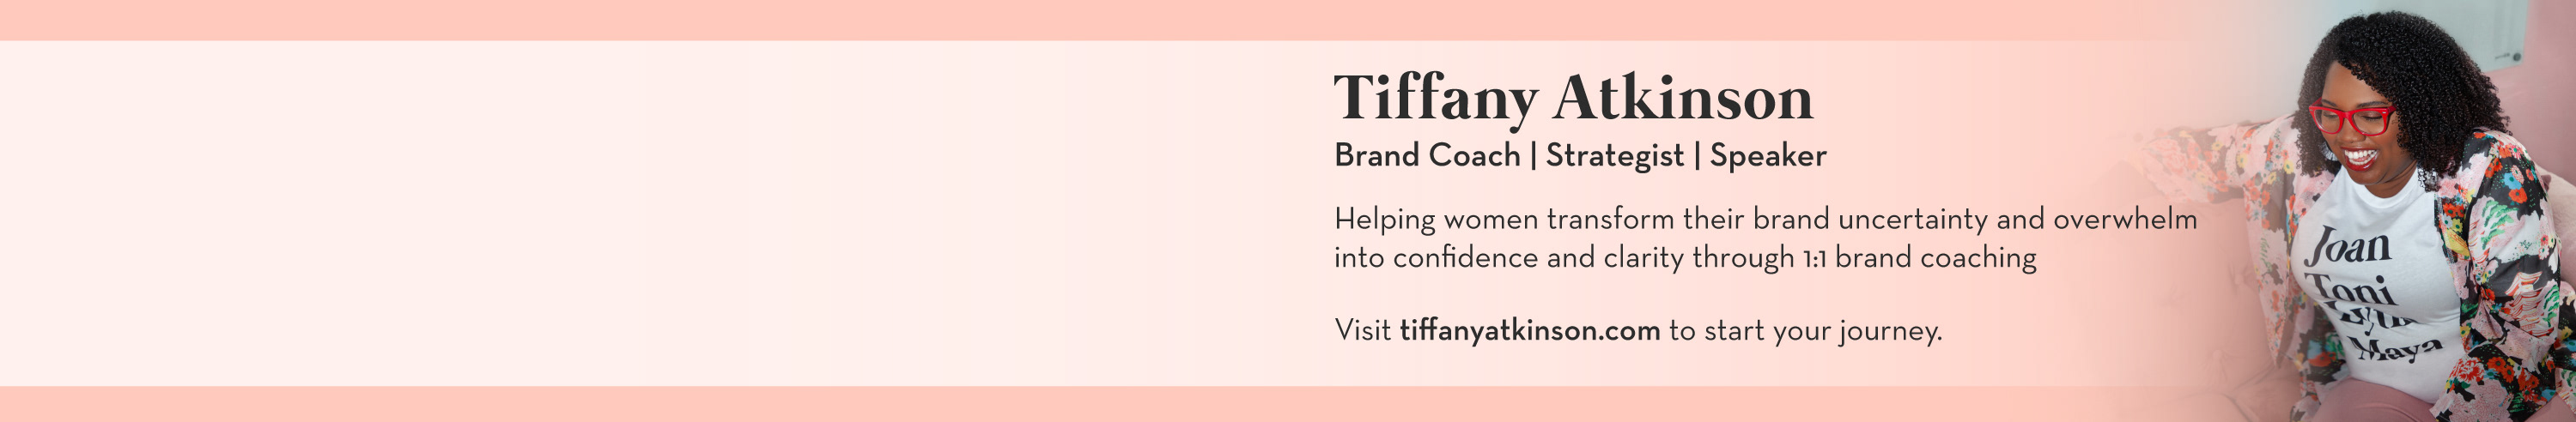 Banner de perfil de Tiffany Atkinson